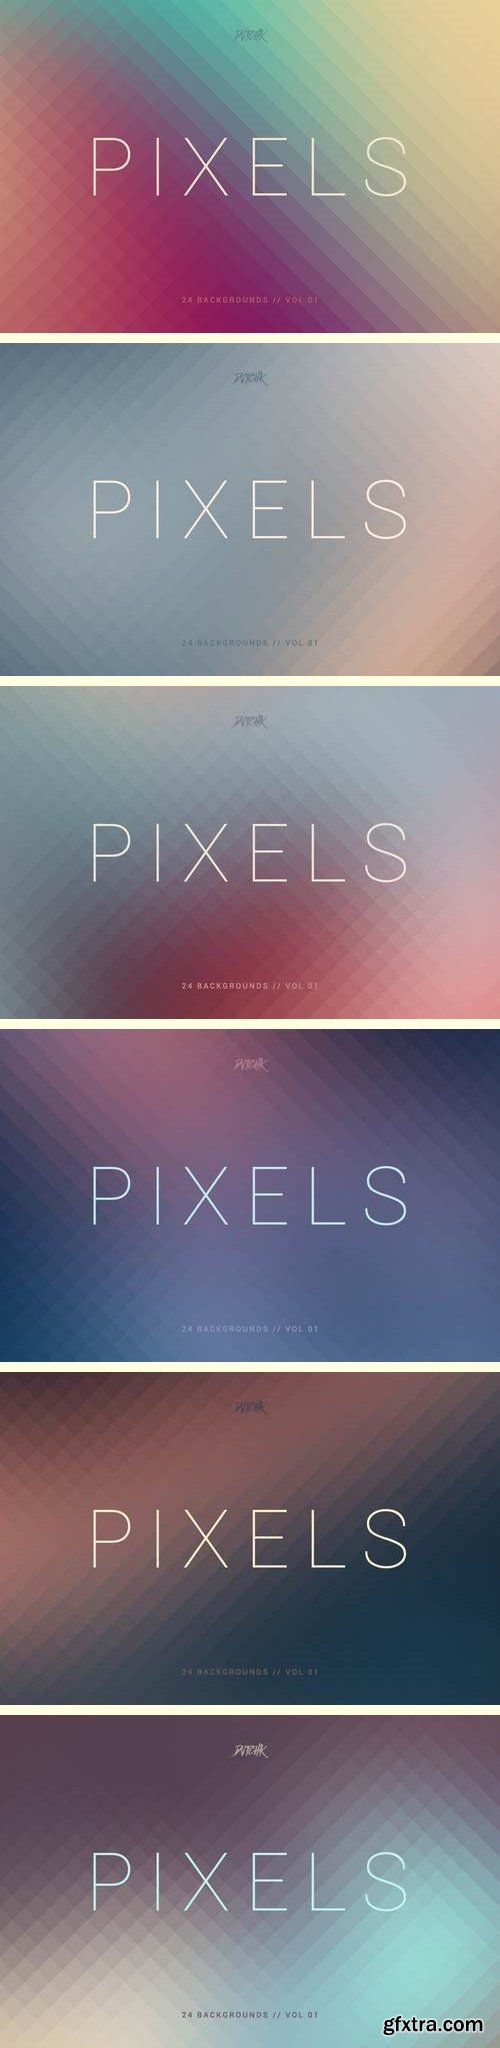 Pixels | Pixelated Backgrounds | Vol. 01